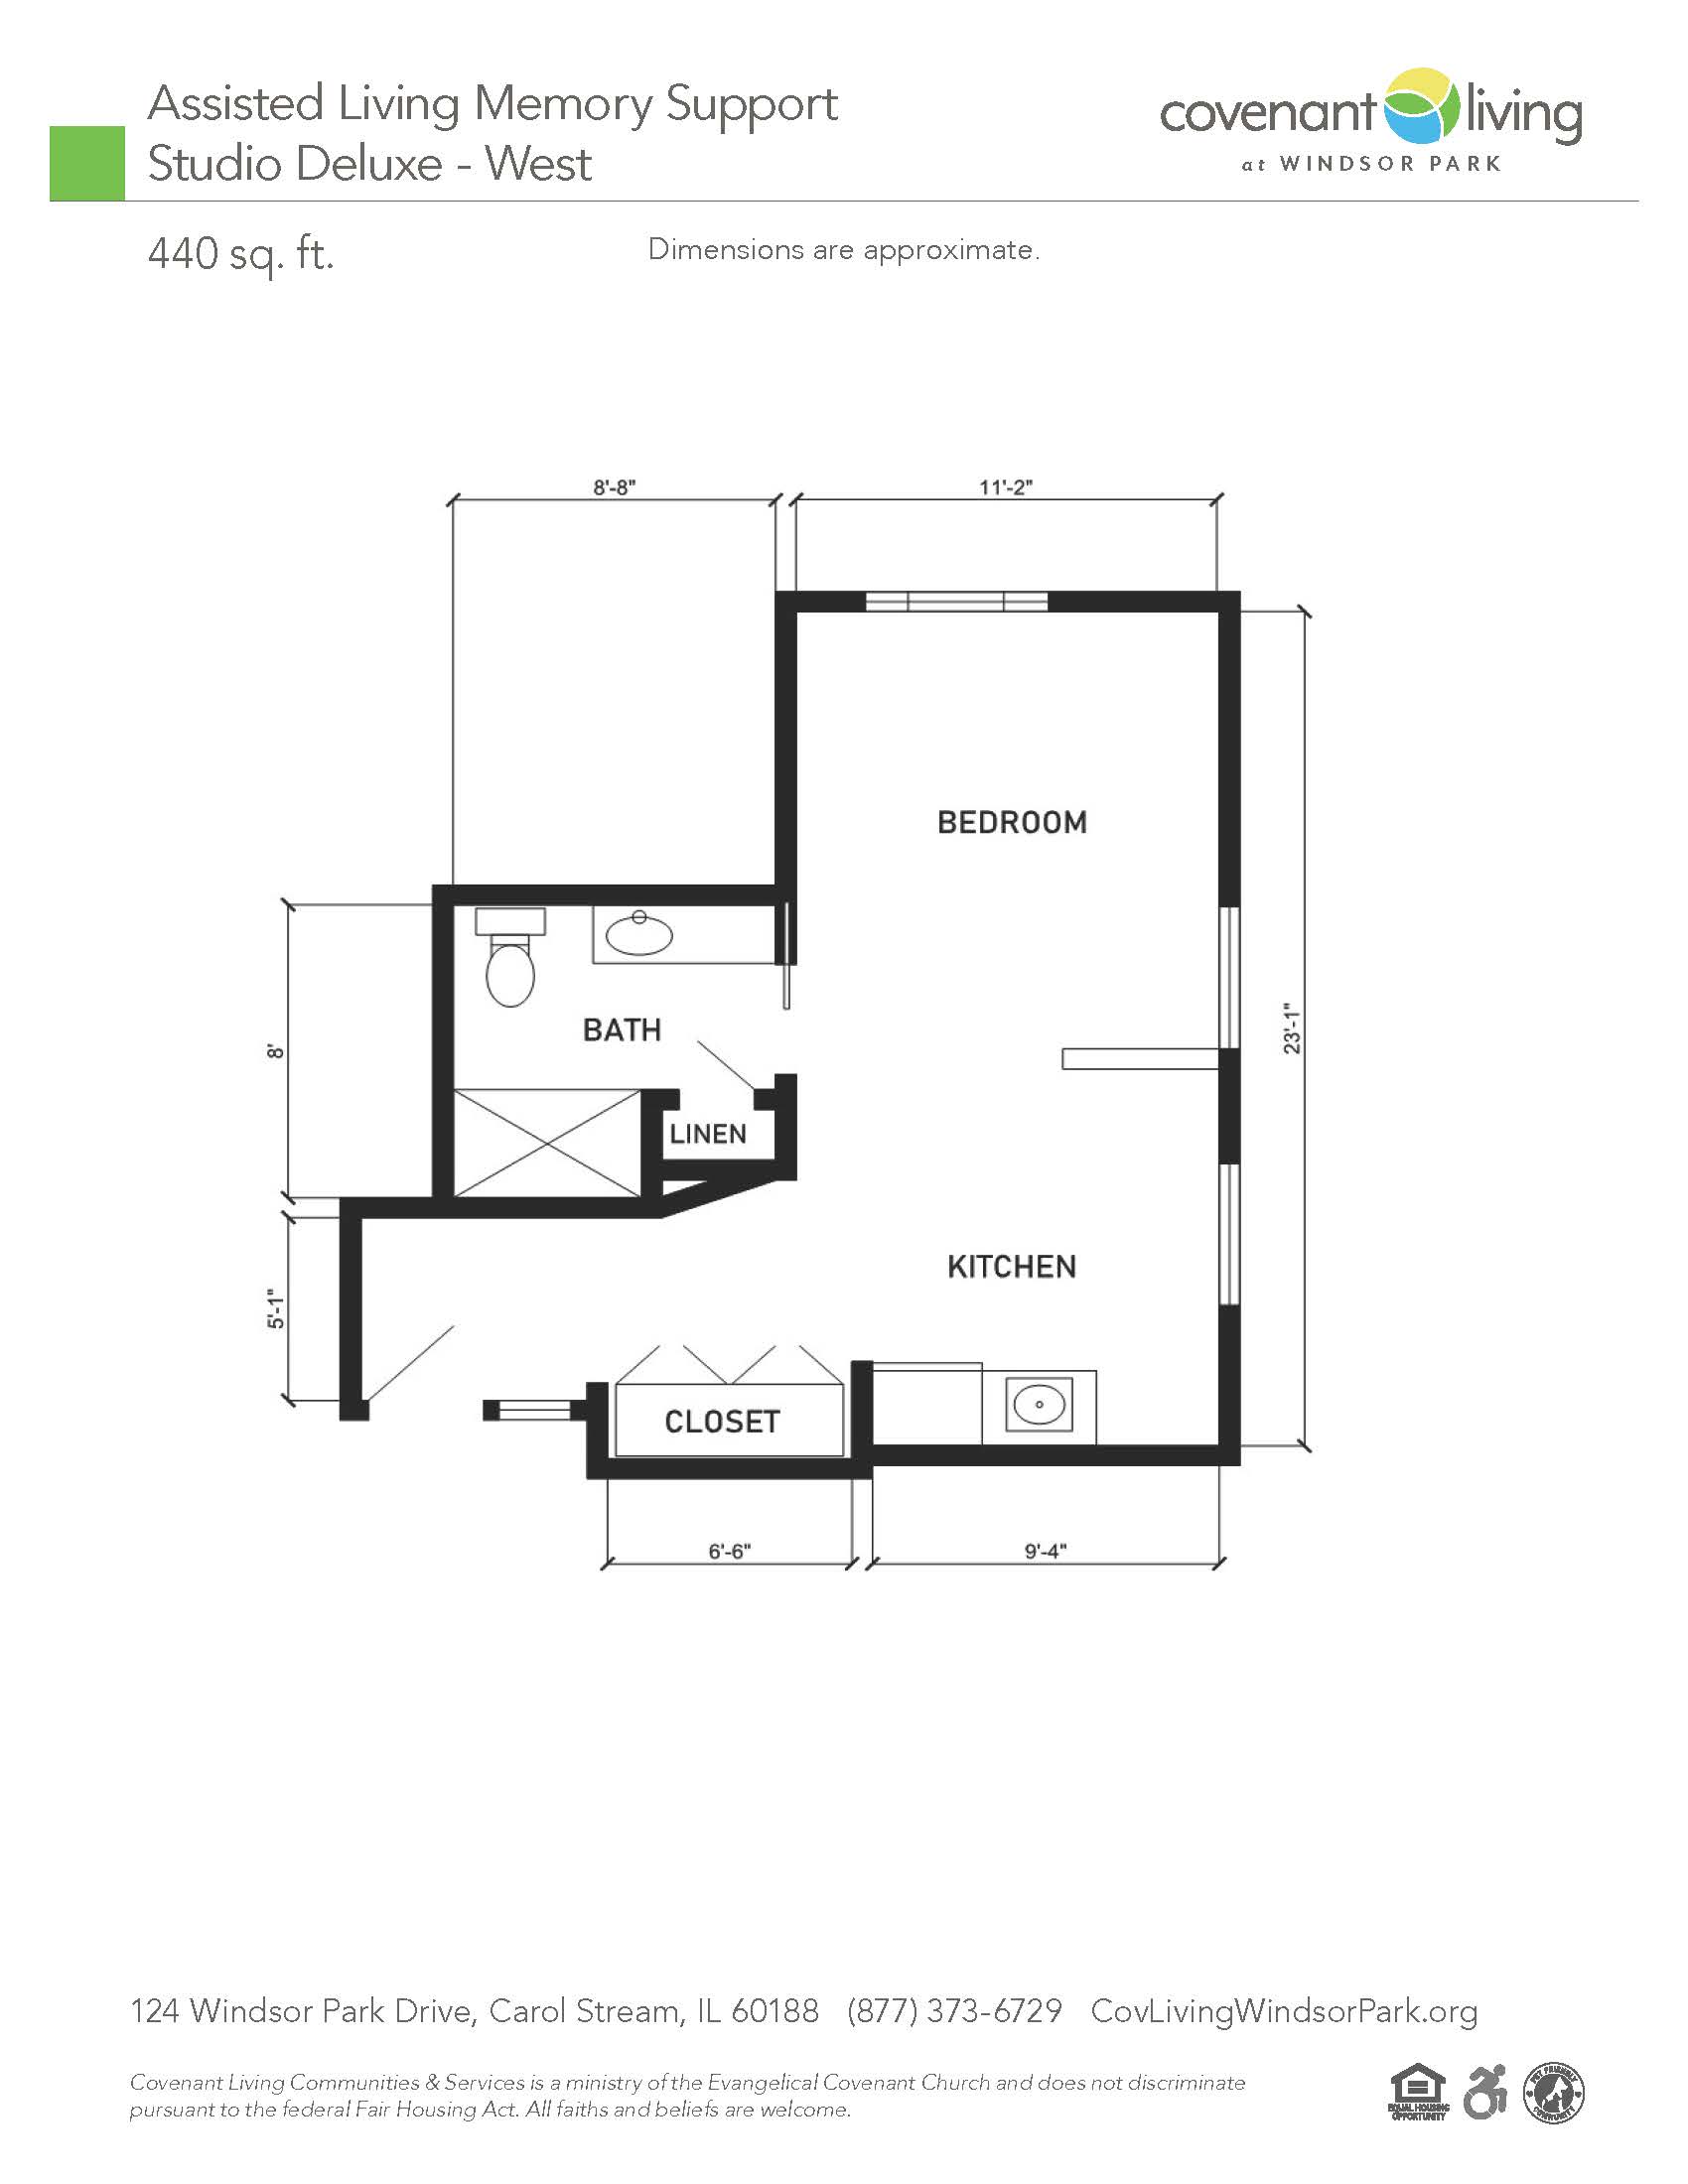 Alms studio floor plan